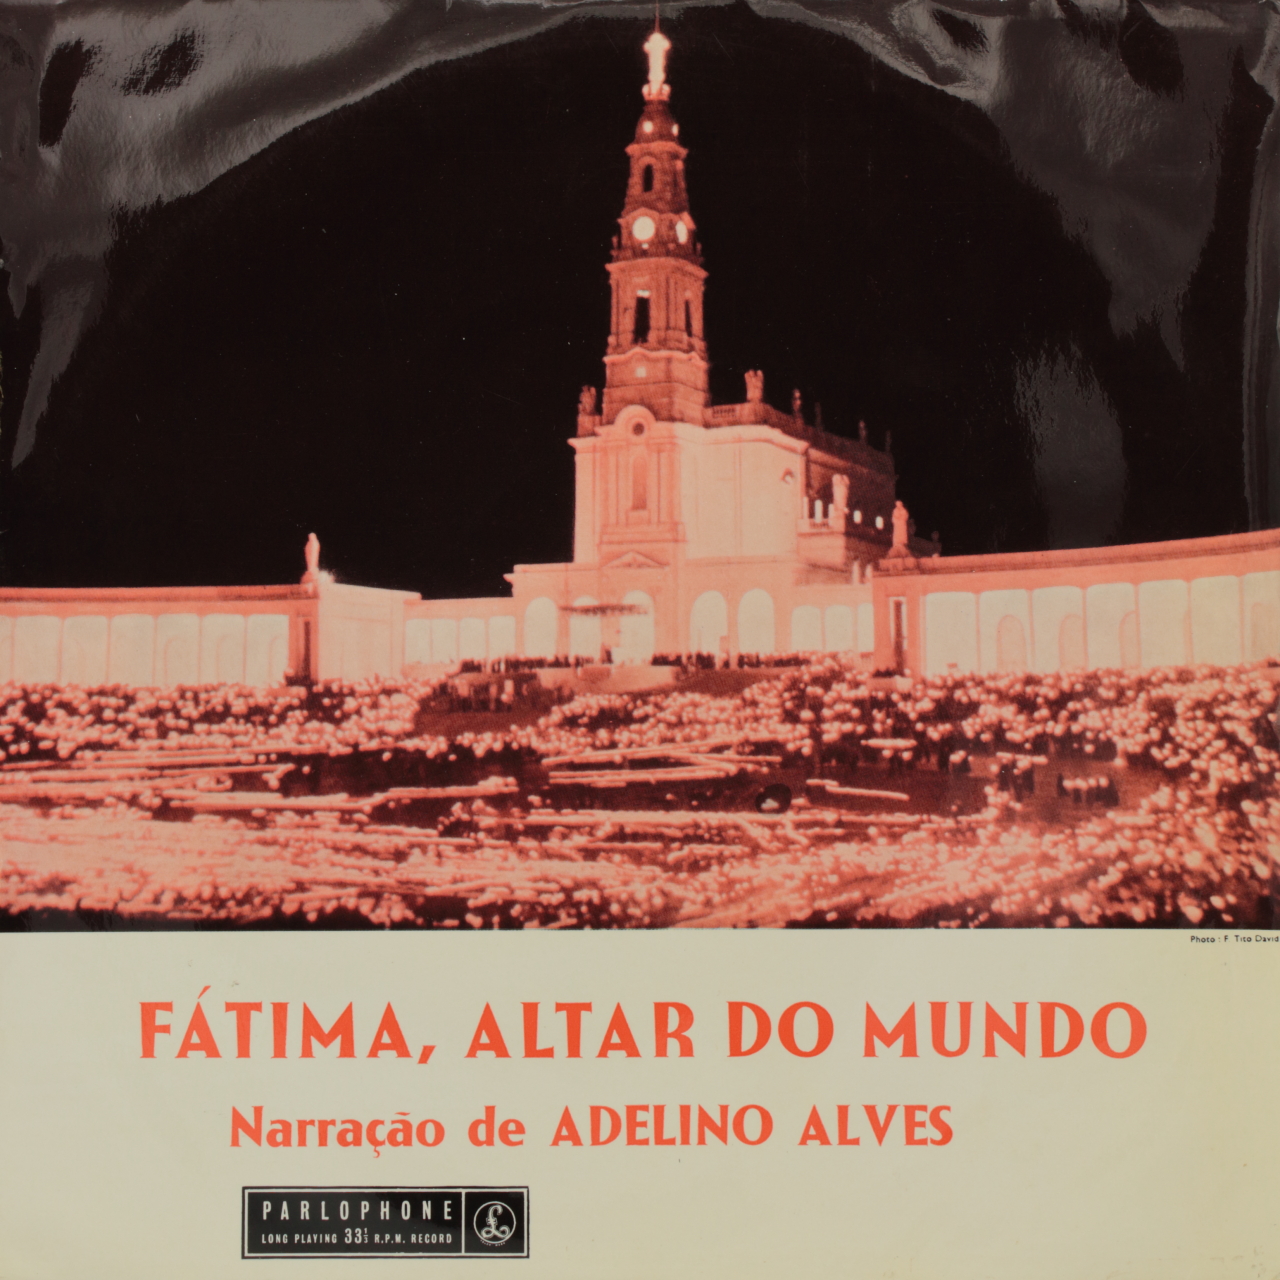 Fátima, altar do mundo